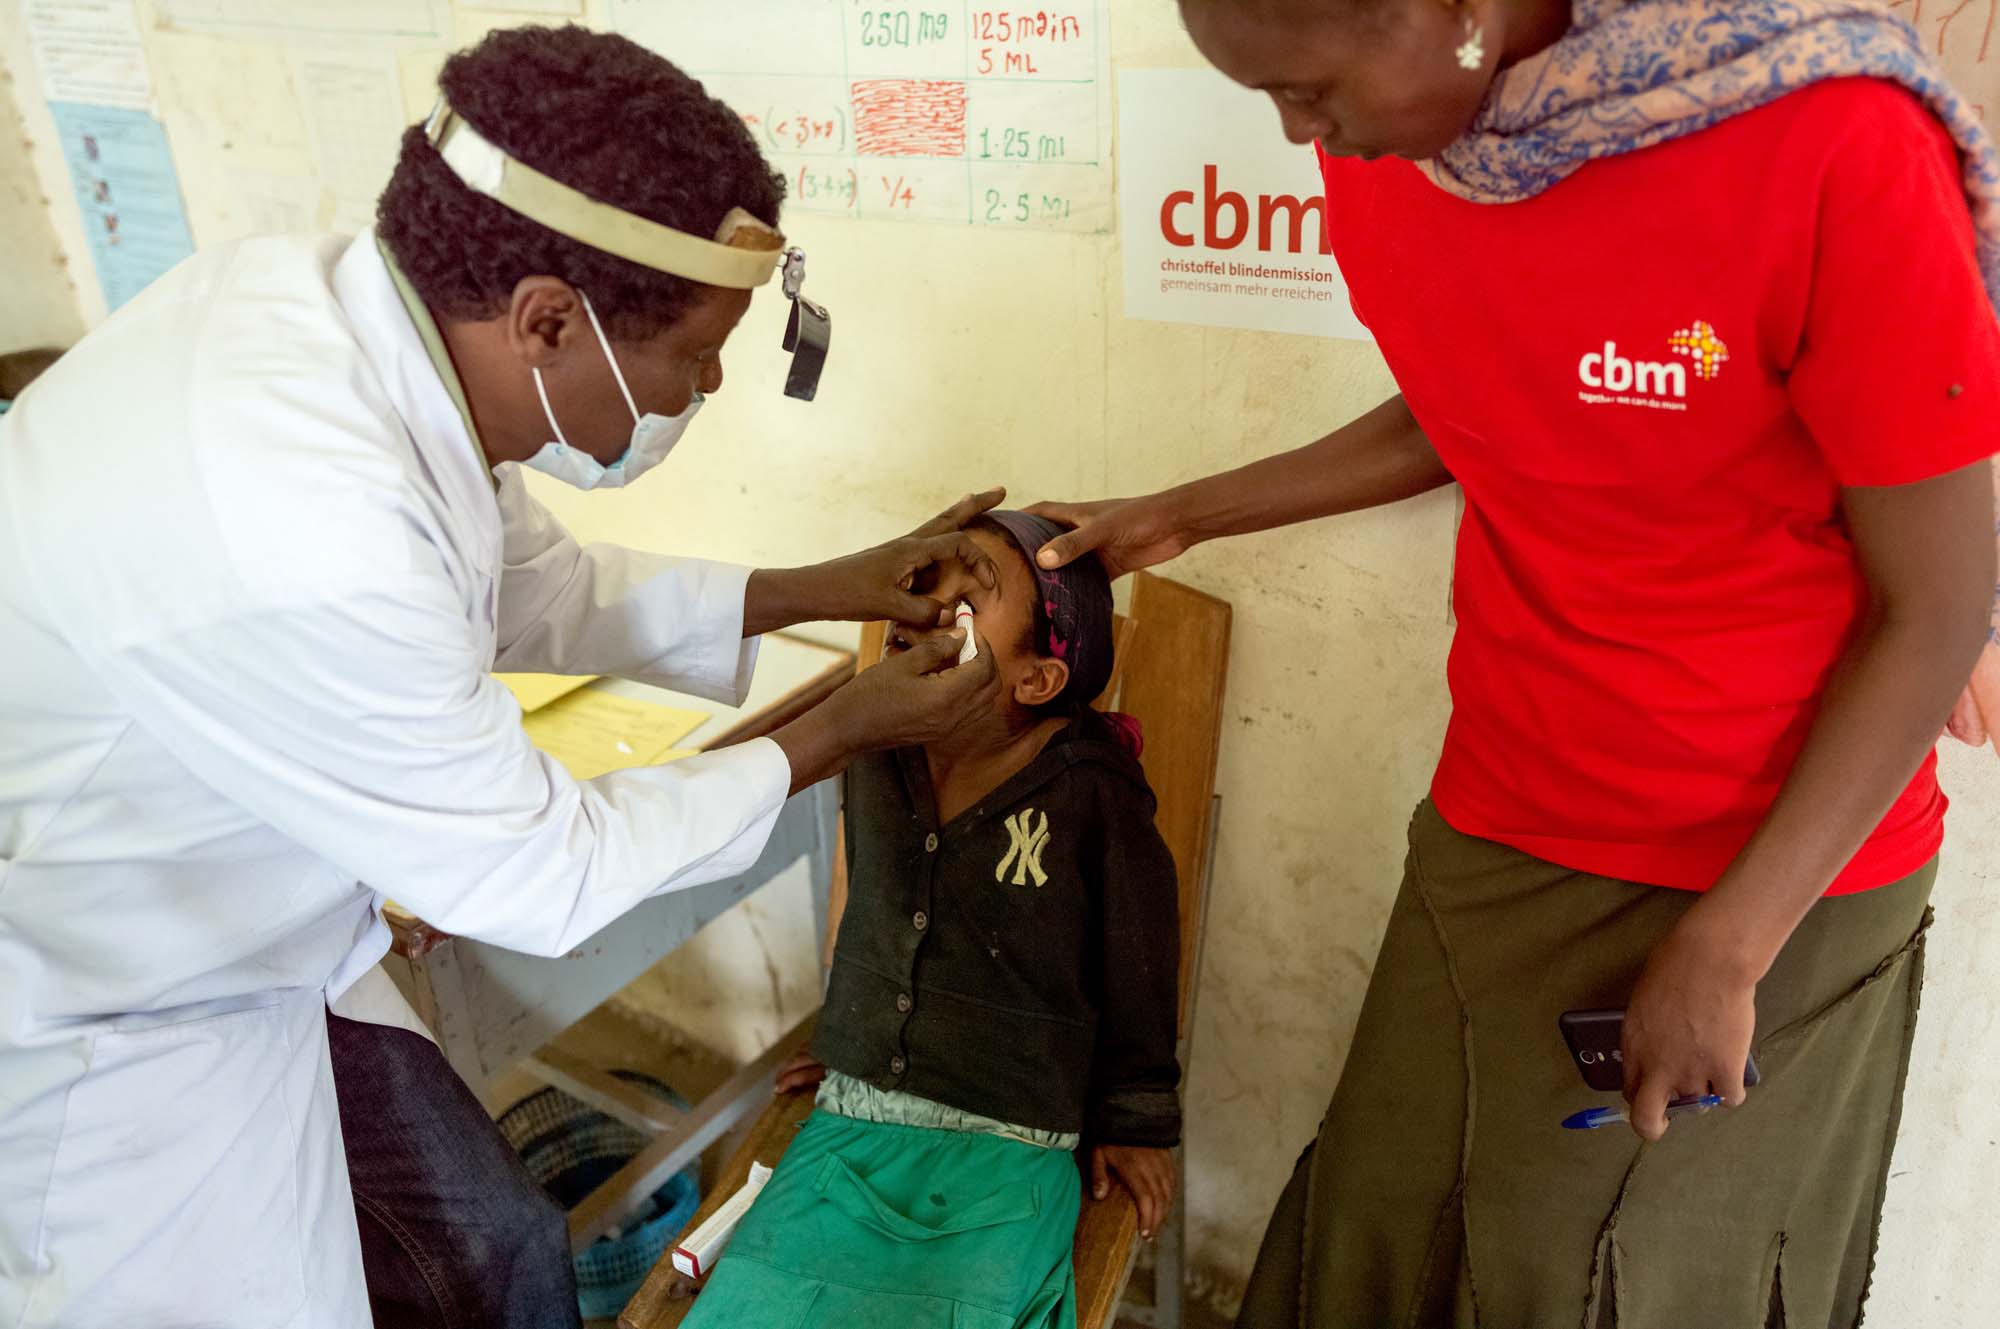 Ein Augenarzt salbt das Auge eines Mädchens ein. Neben dem Mädchen steht eine CBM-Helferin.